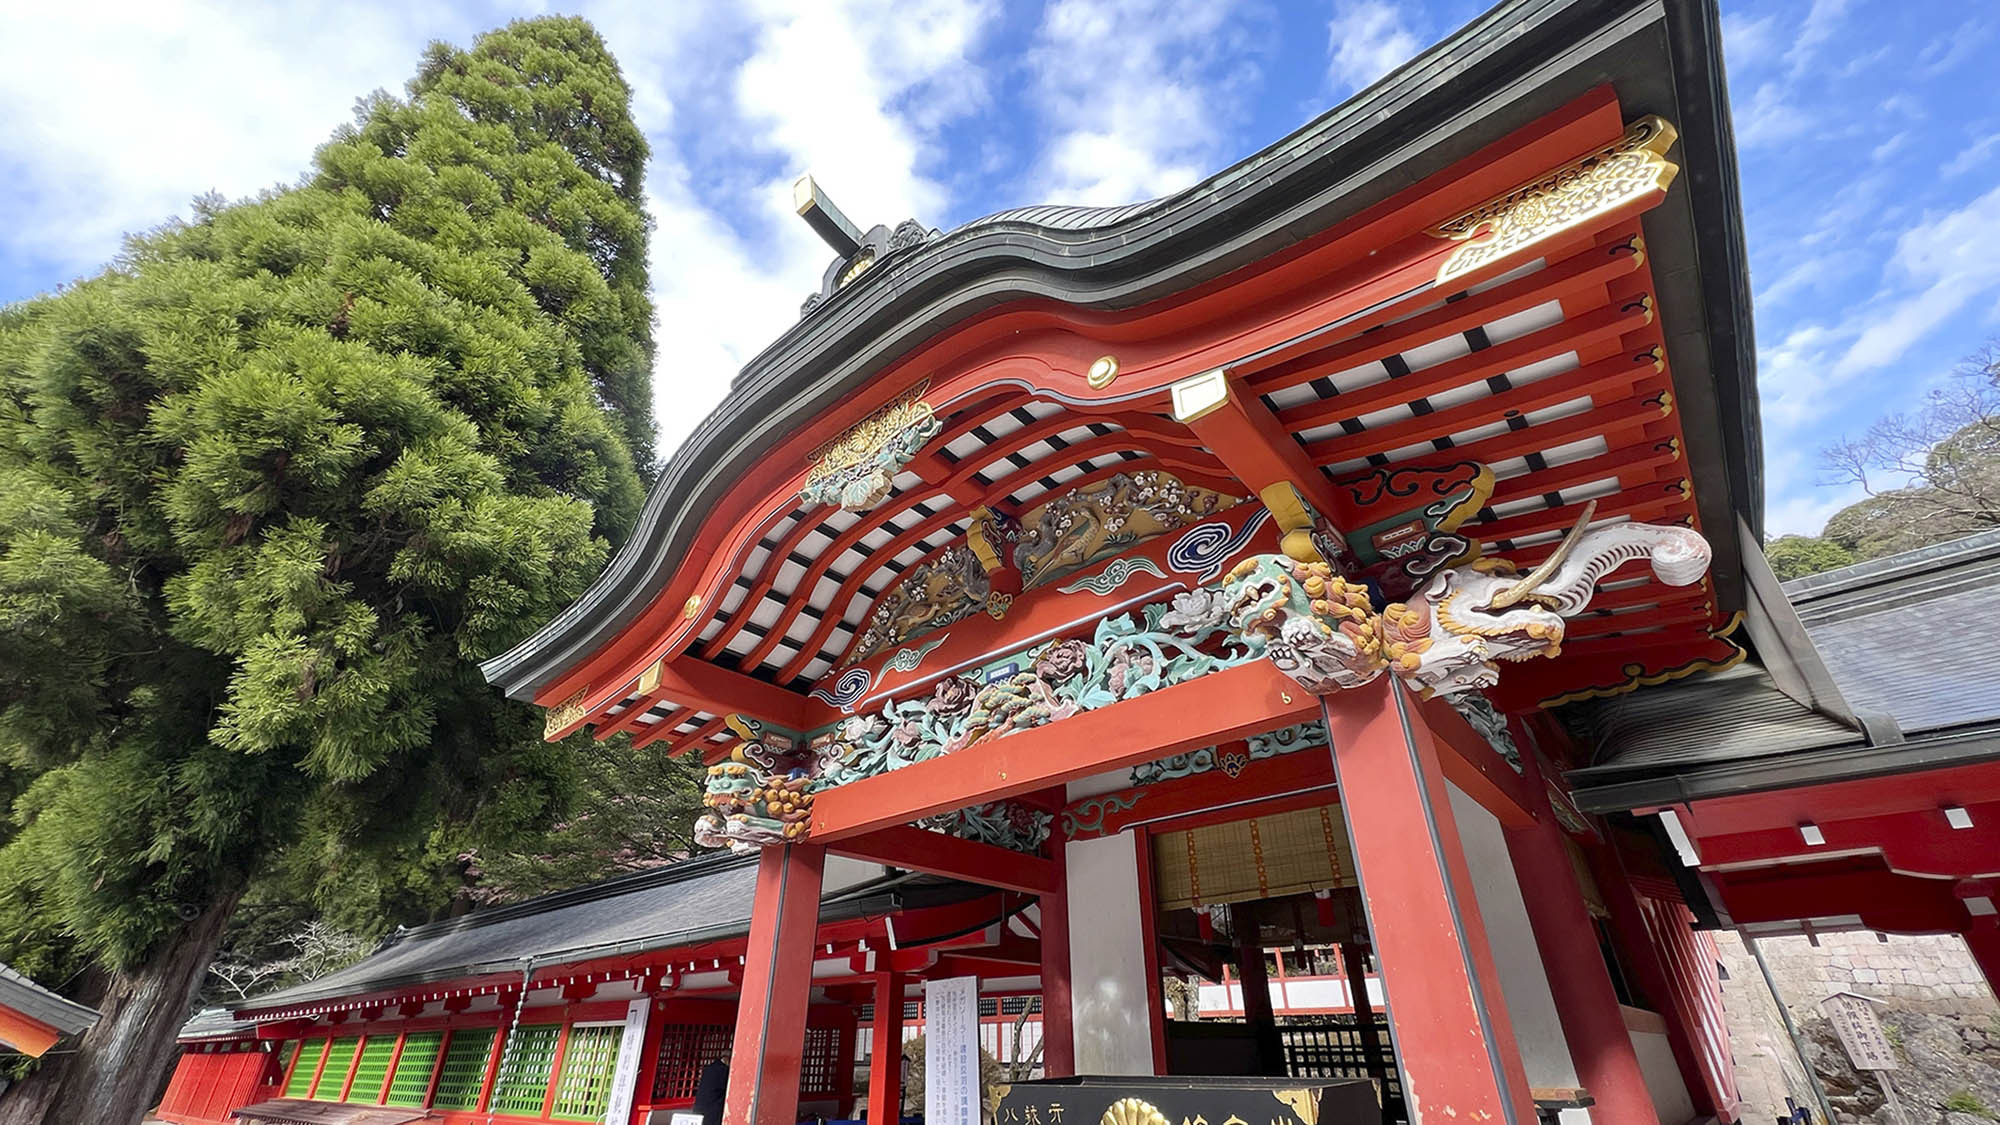 ・【観光スポット】「霧島神宮」の社殿は国宝指定されています（当施設より車で約10分）